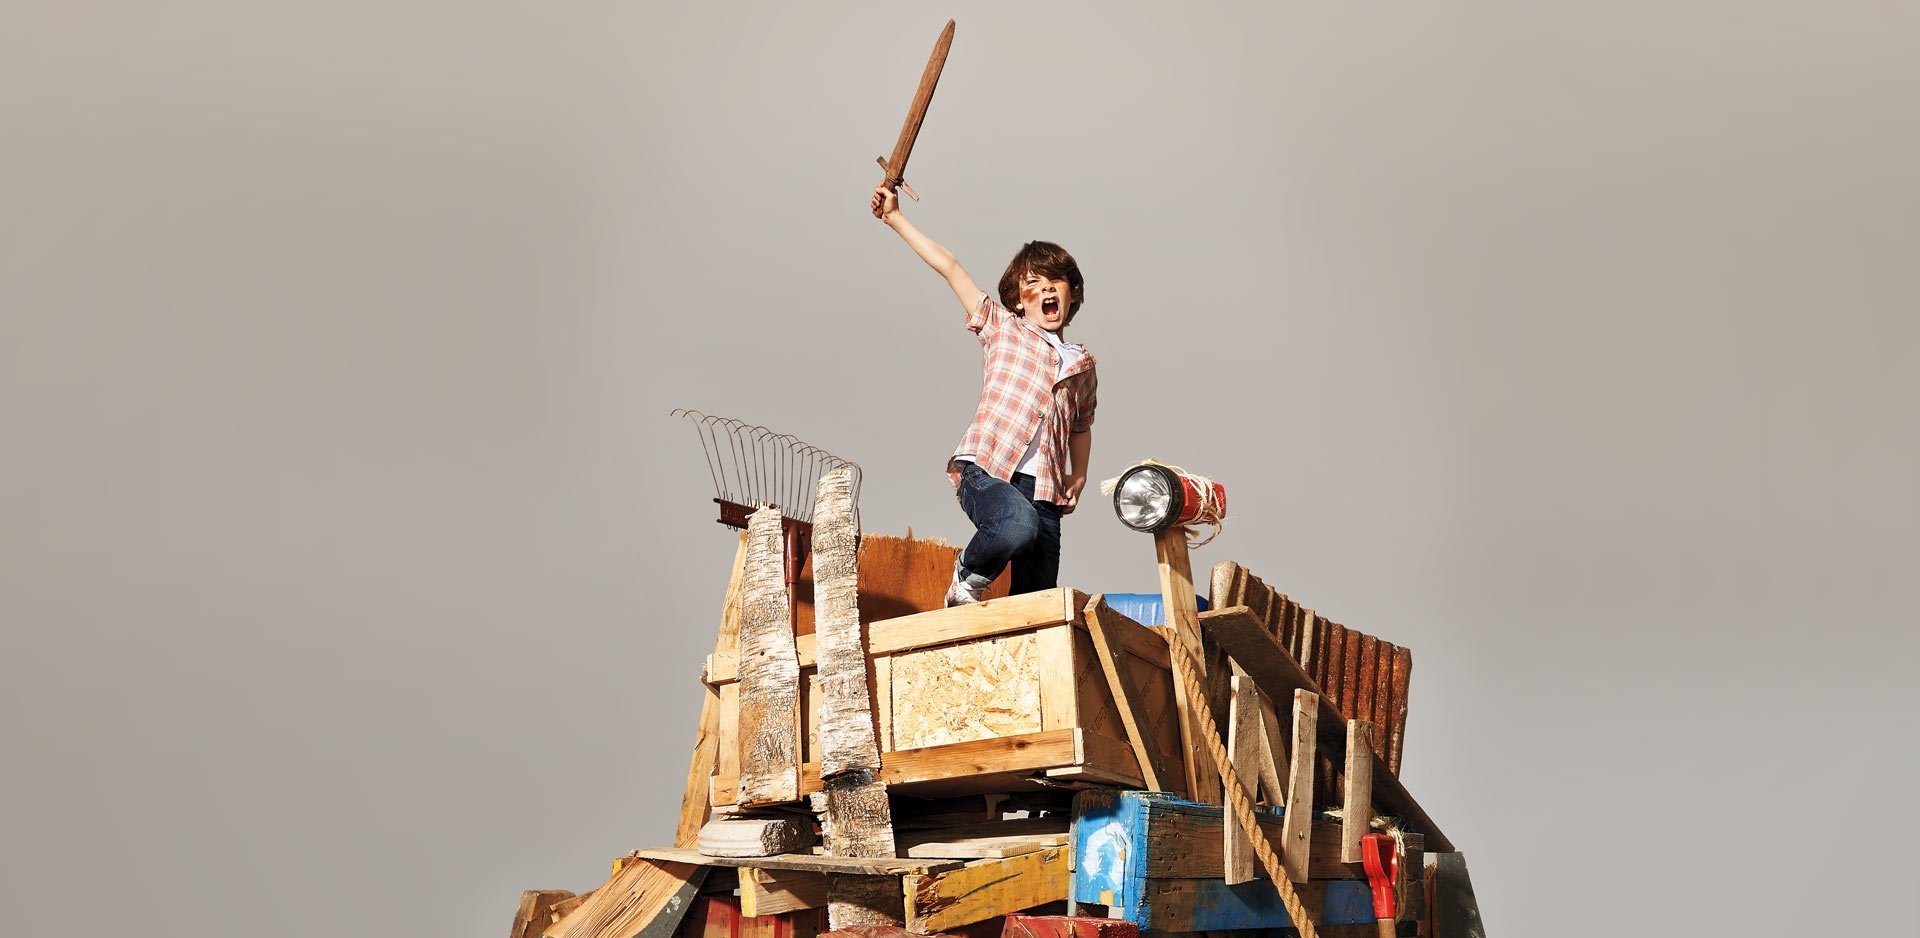 παιδί κρατάει ξύλινο σπαθί σε αυτοσχέδιο οχυρό και απεικονίζει την παρακμή του παιχνιδιού και την άνοδο των ψυχικών διαταραχών στα παιδιά